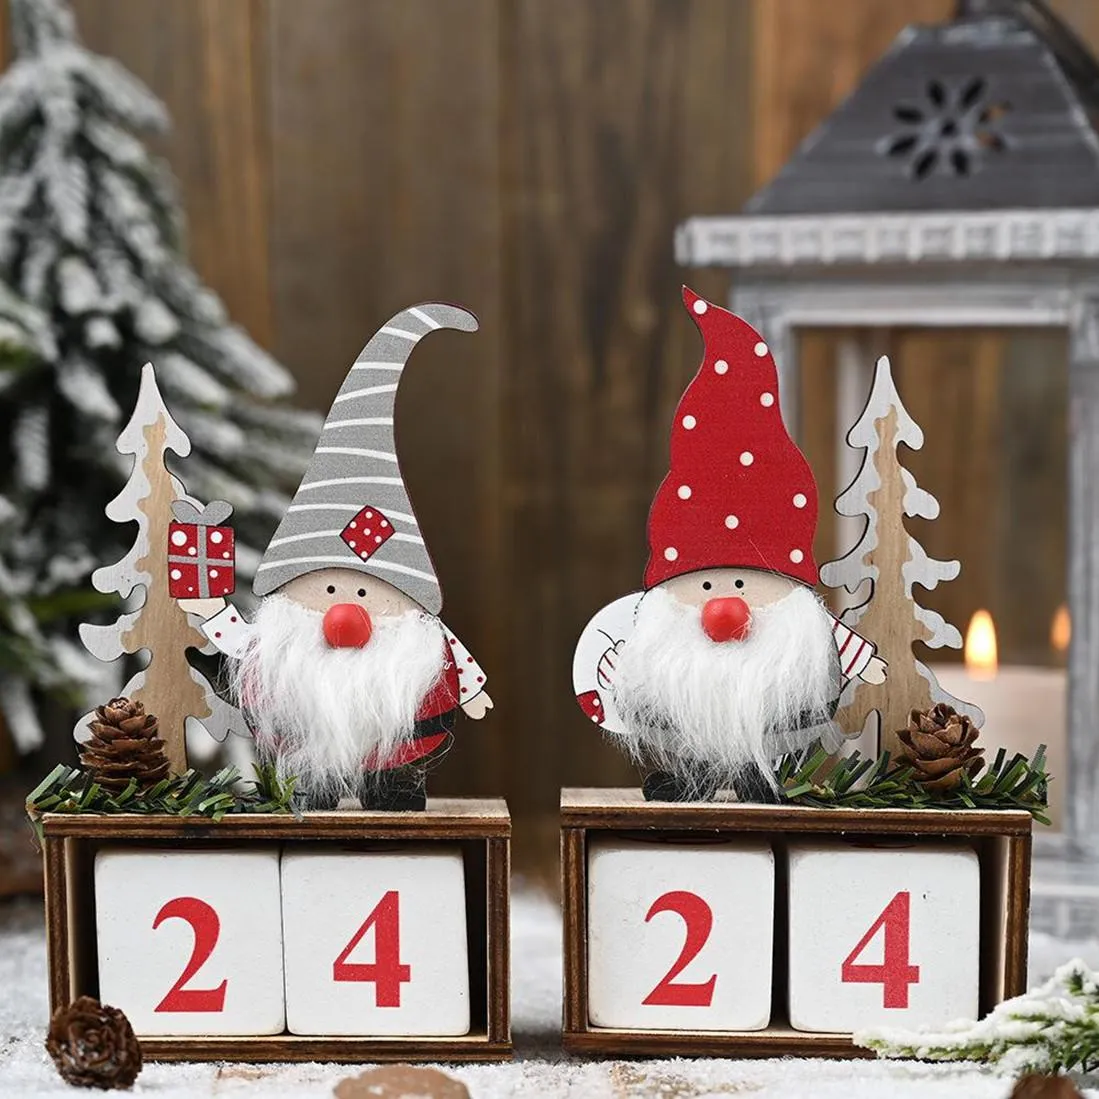 Weihnachts desktop Ornament Santa Claus Gnome Holz Kalender Advent Countdown Dekoration Home Tischplatte Dekor